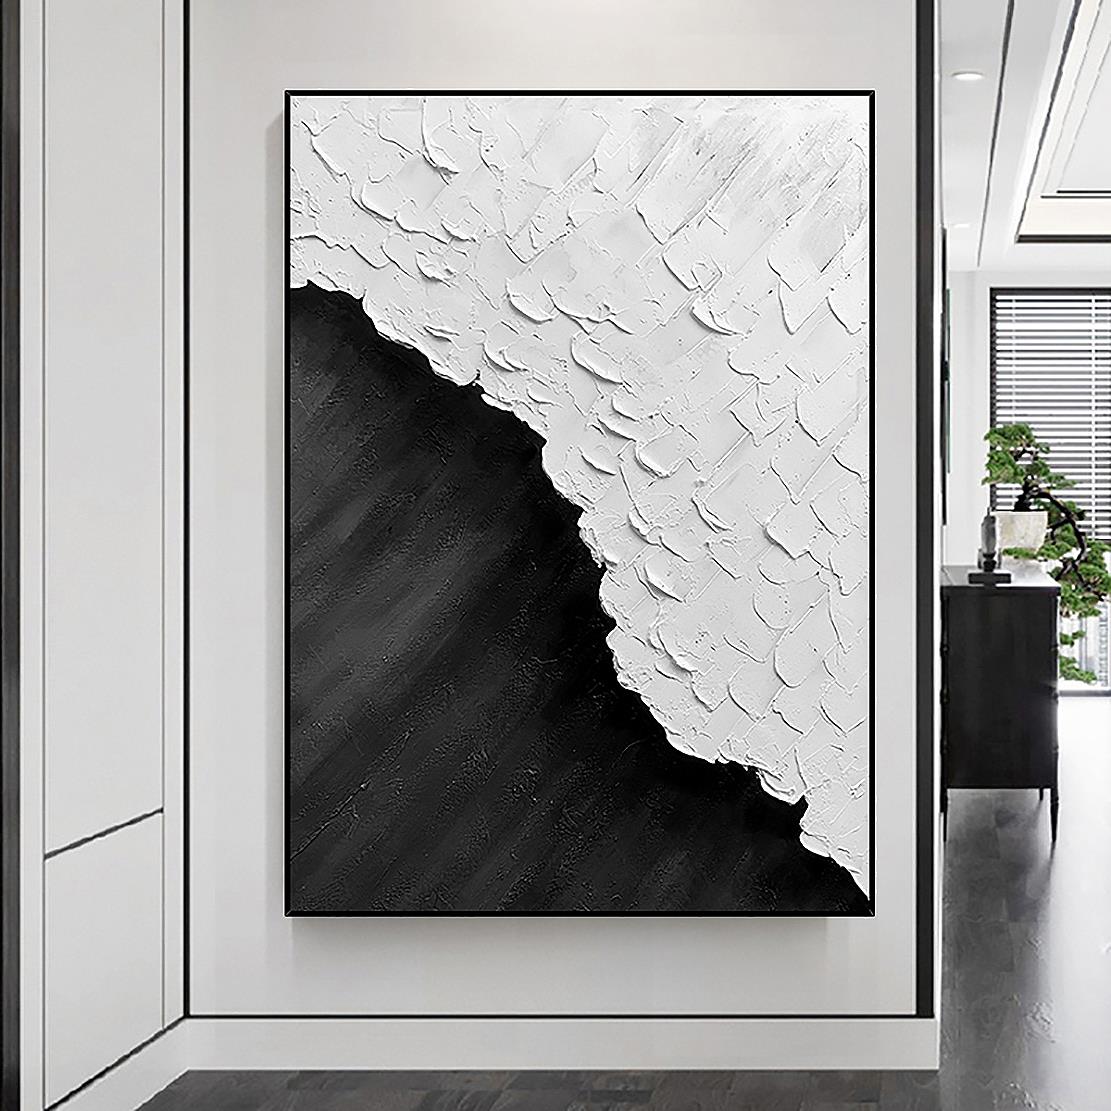 ブラック ホワイト ビーチ ウェーブ サンド 09 by Palette Knife 壁装飾油絵